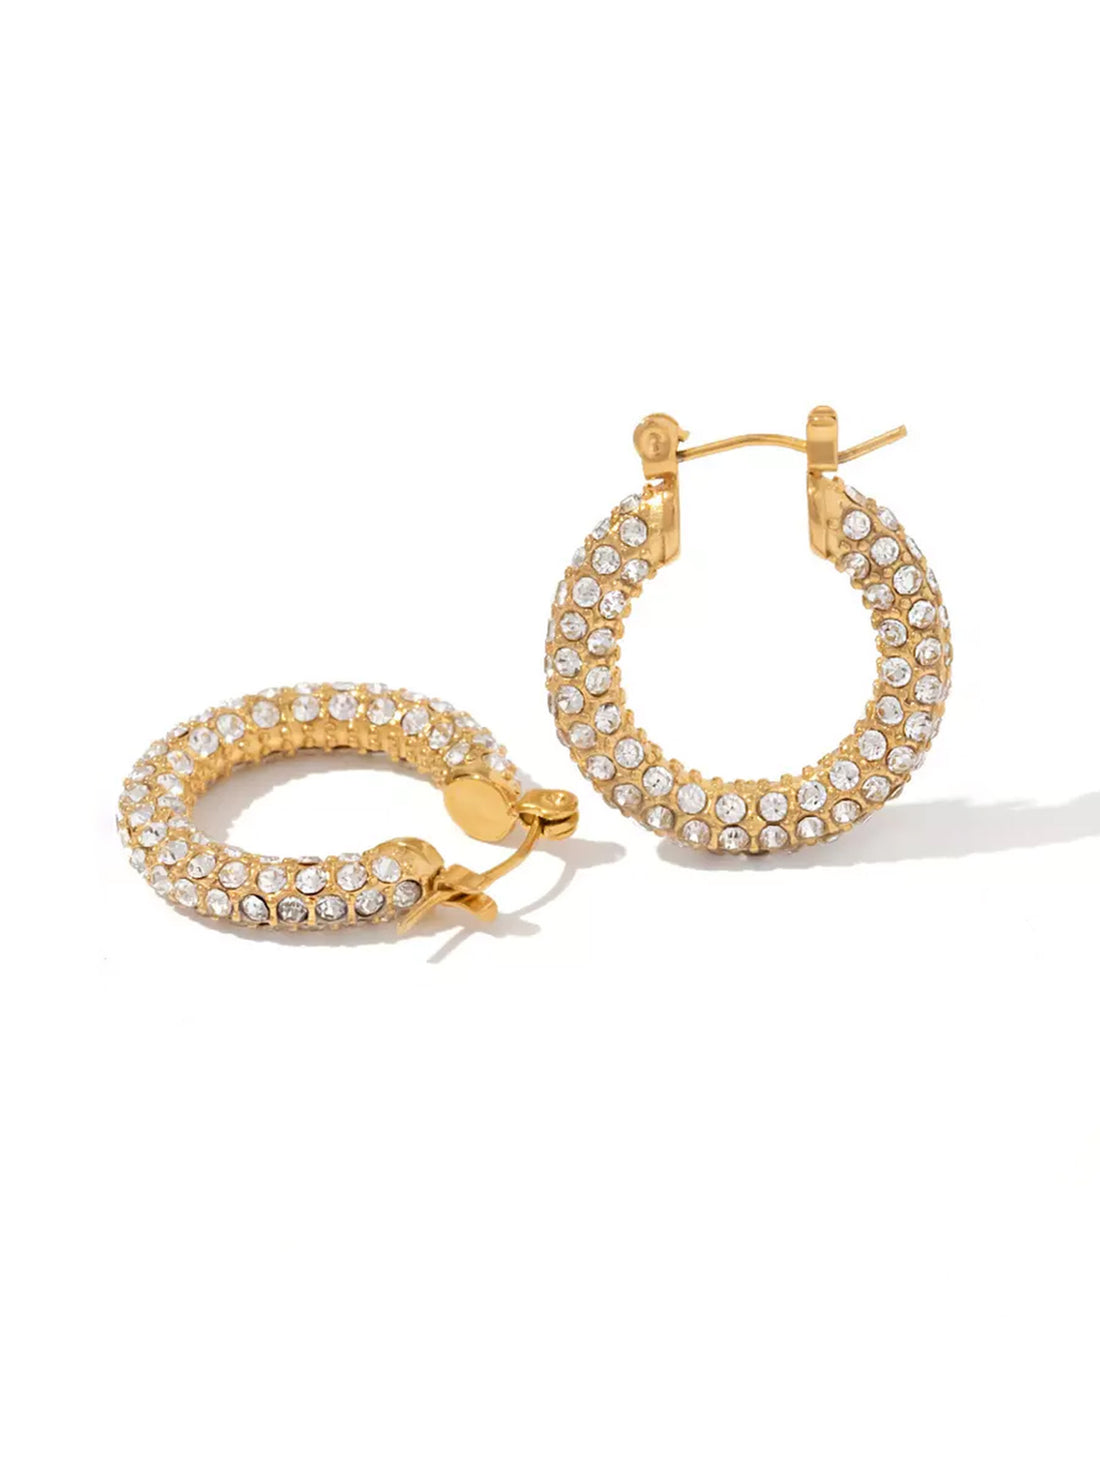 Earrings Bangkok - Jewelry-InStyle